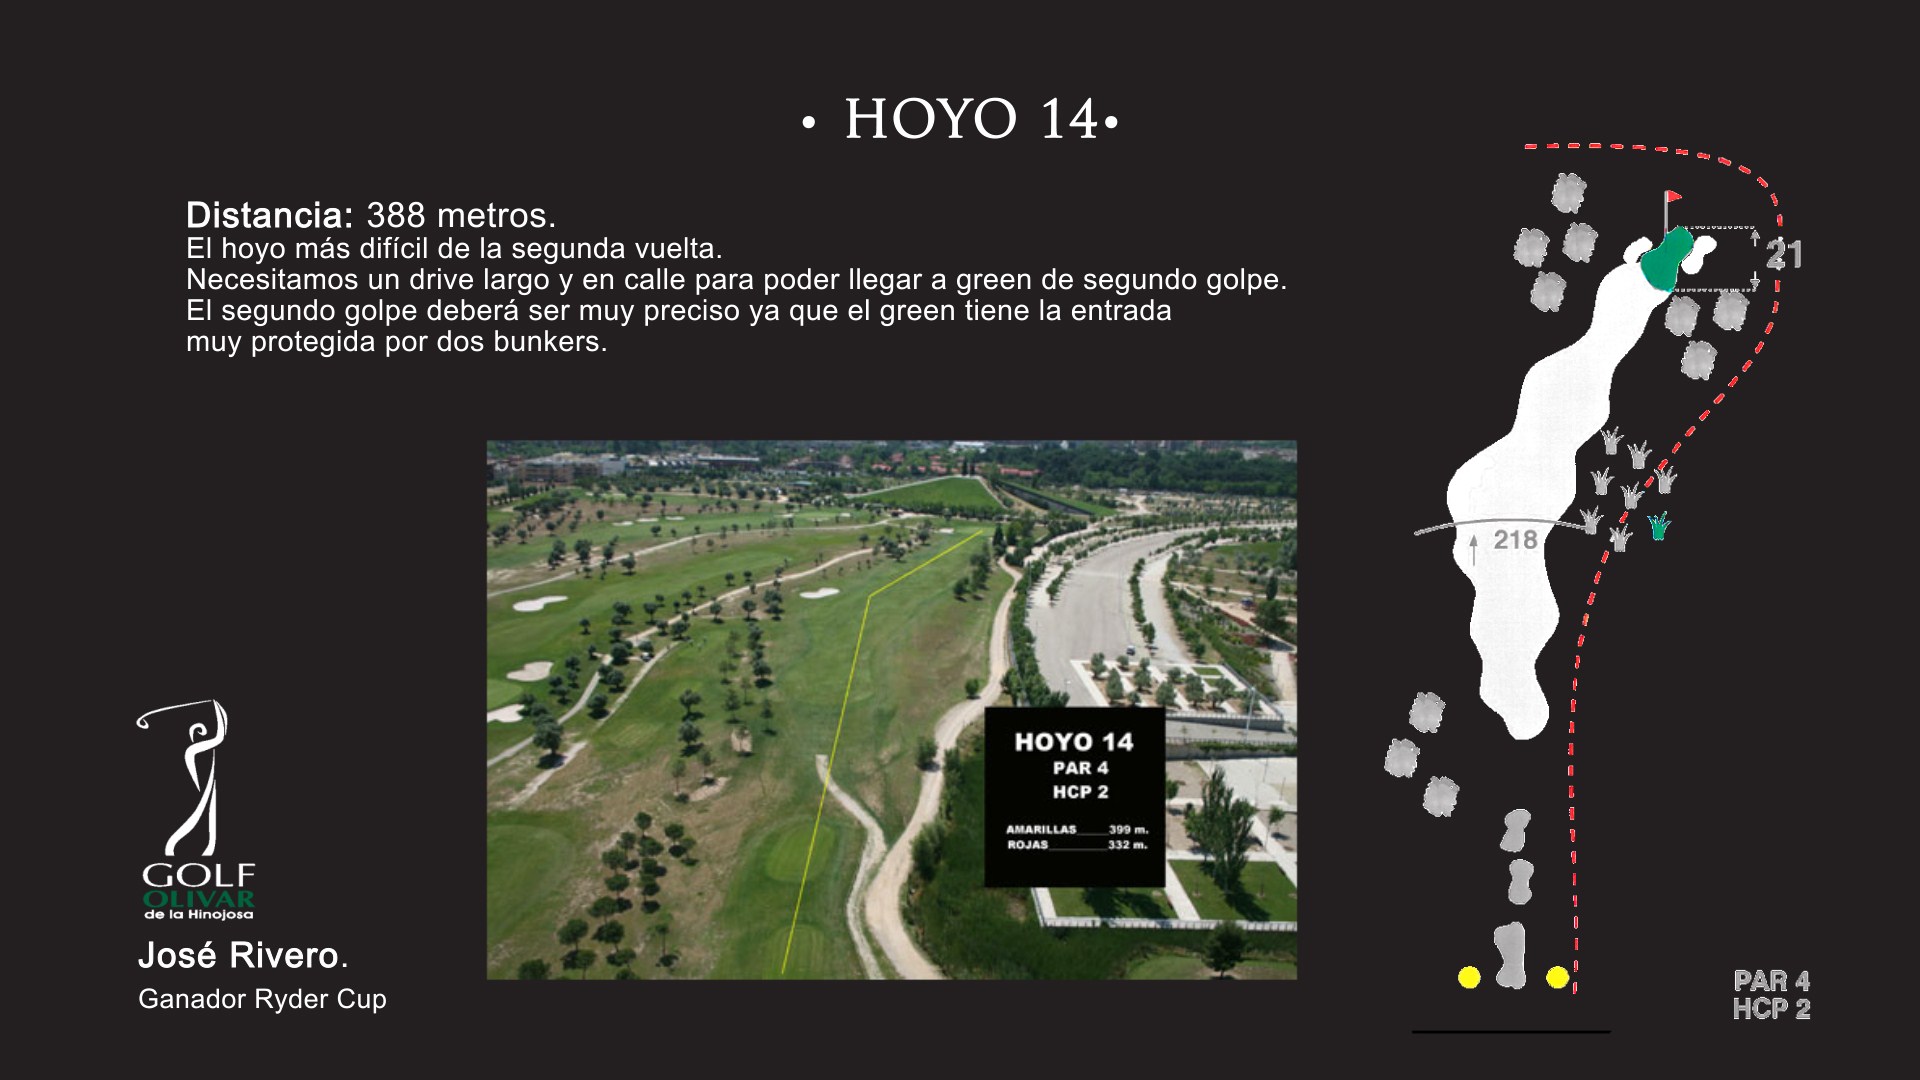 Hoyo 14 Olivar de la Hinojosa